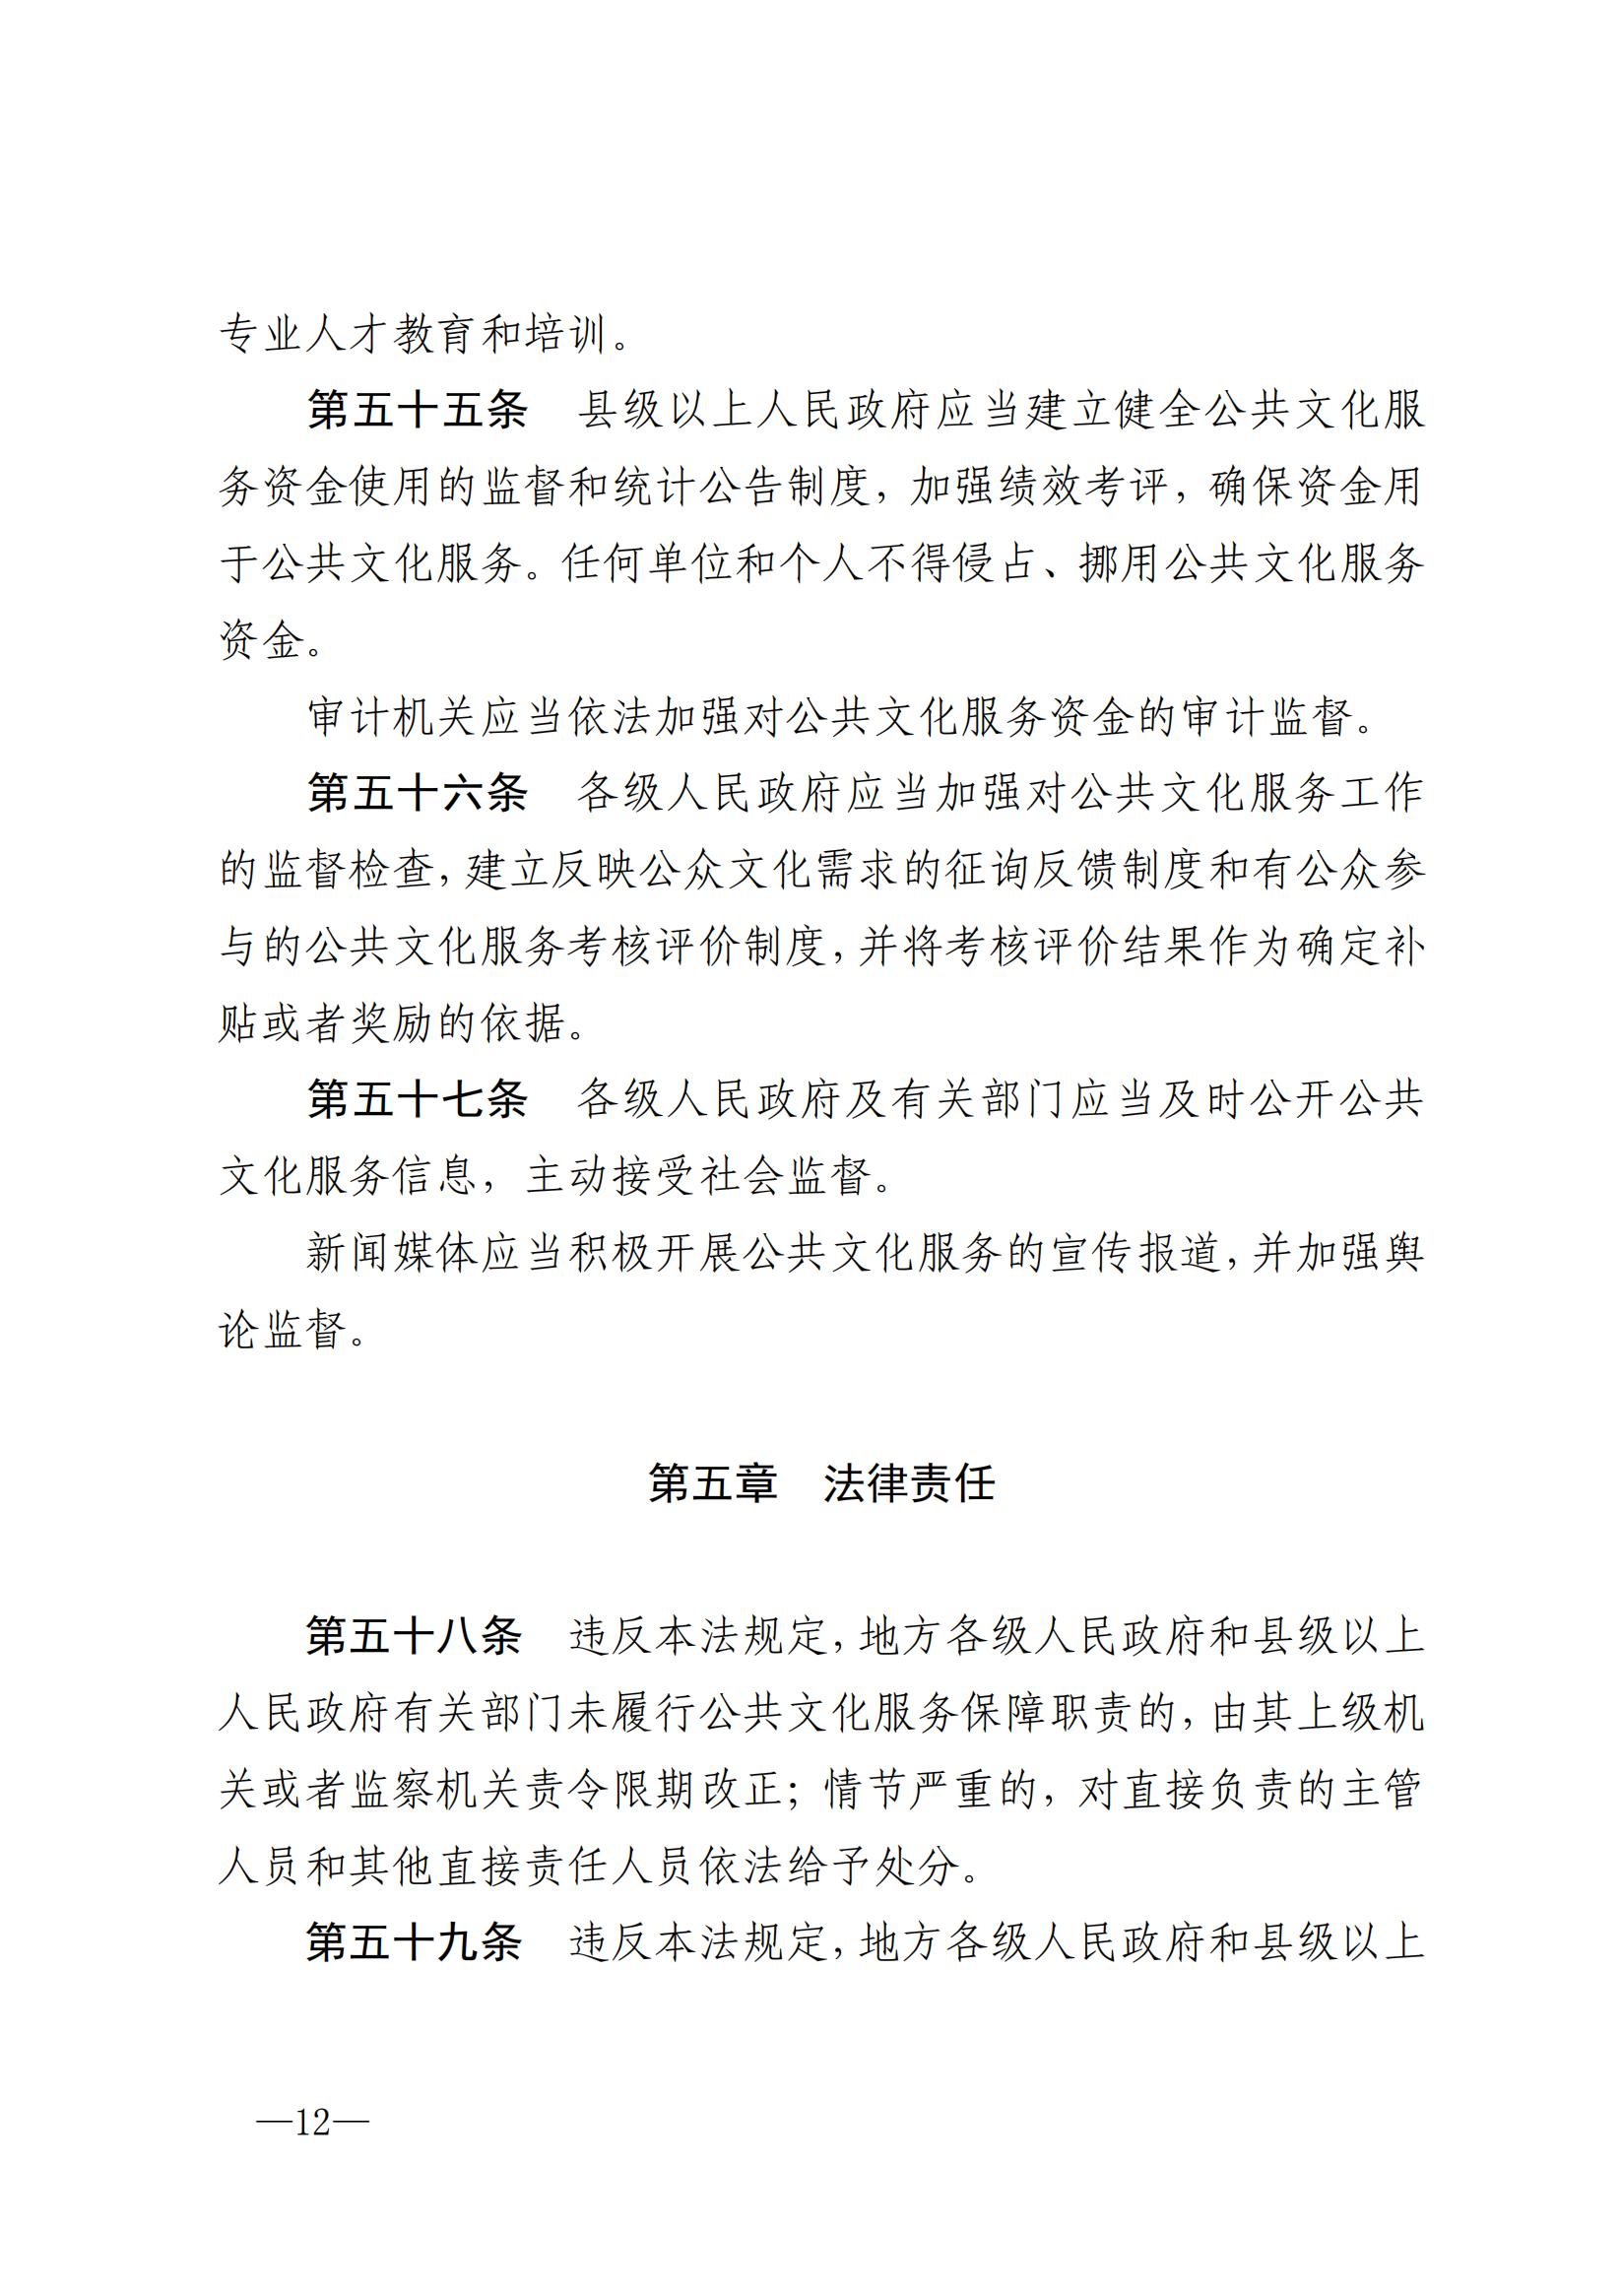 中华人民共和国公共文化服务保障法_11.jpg